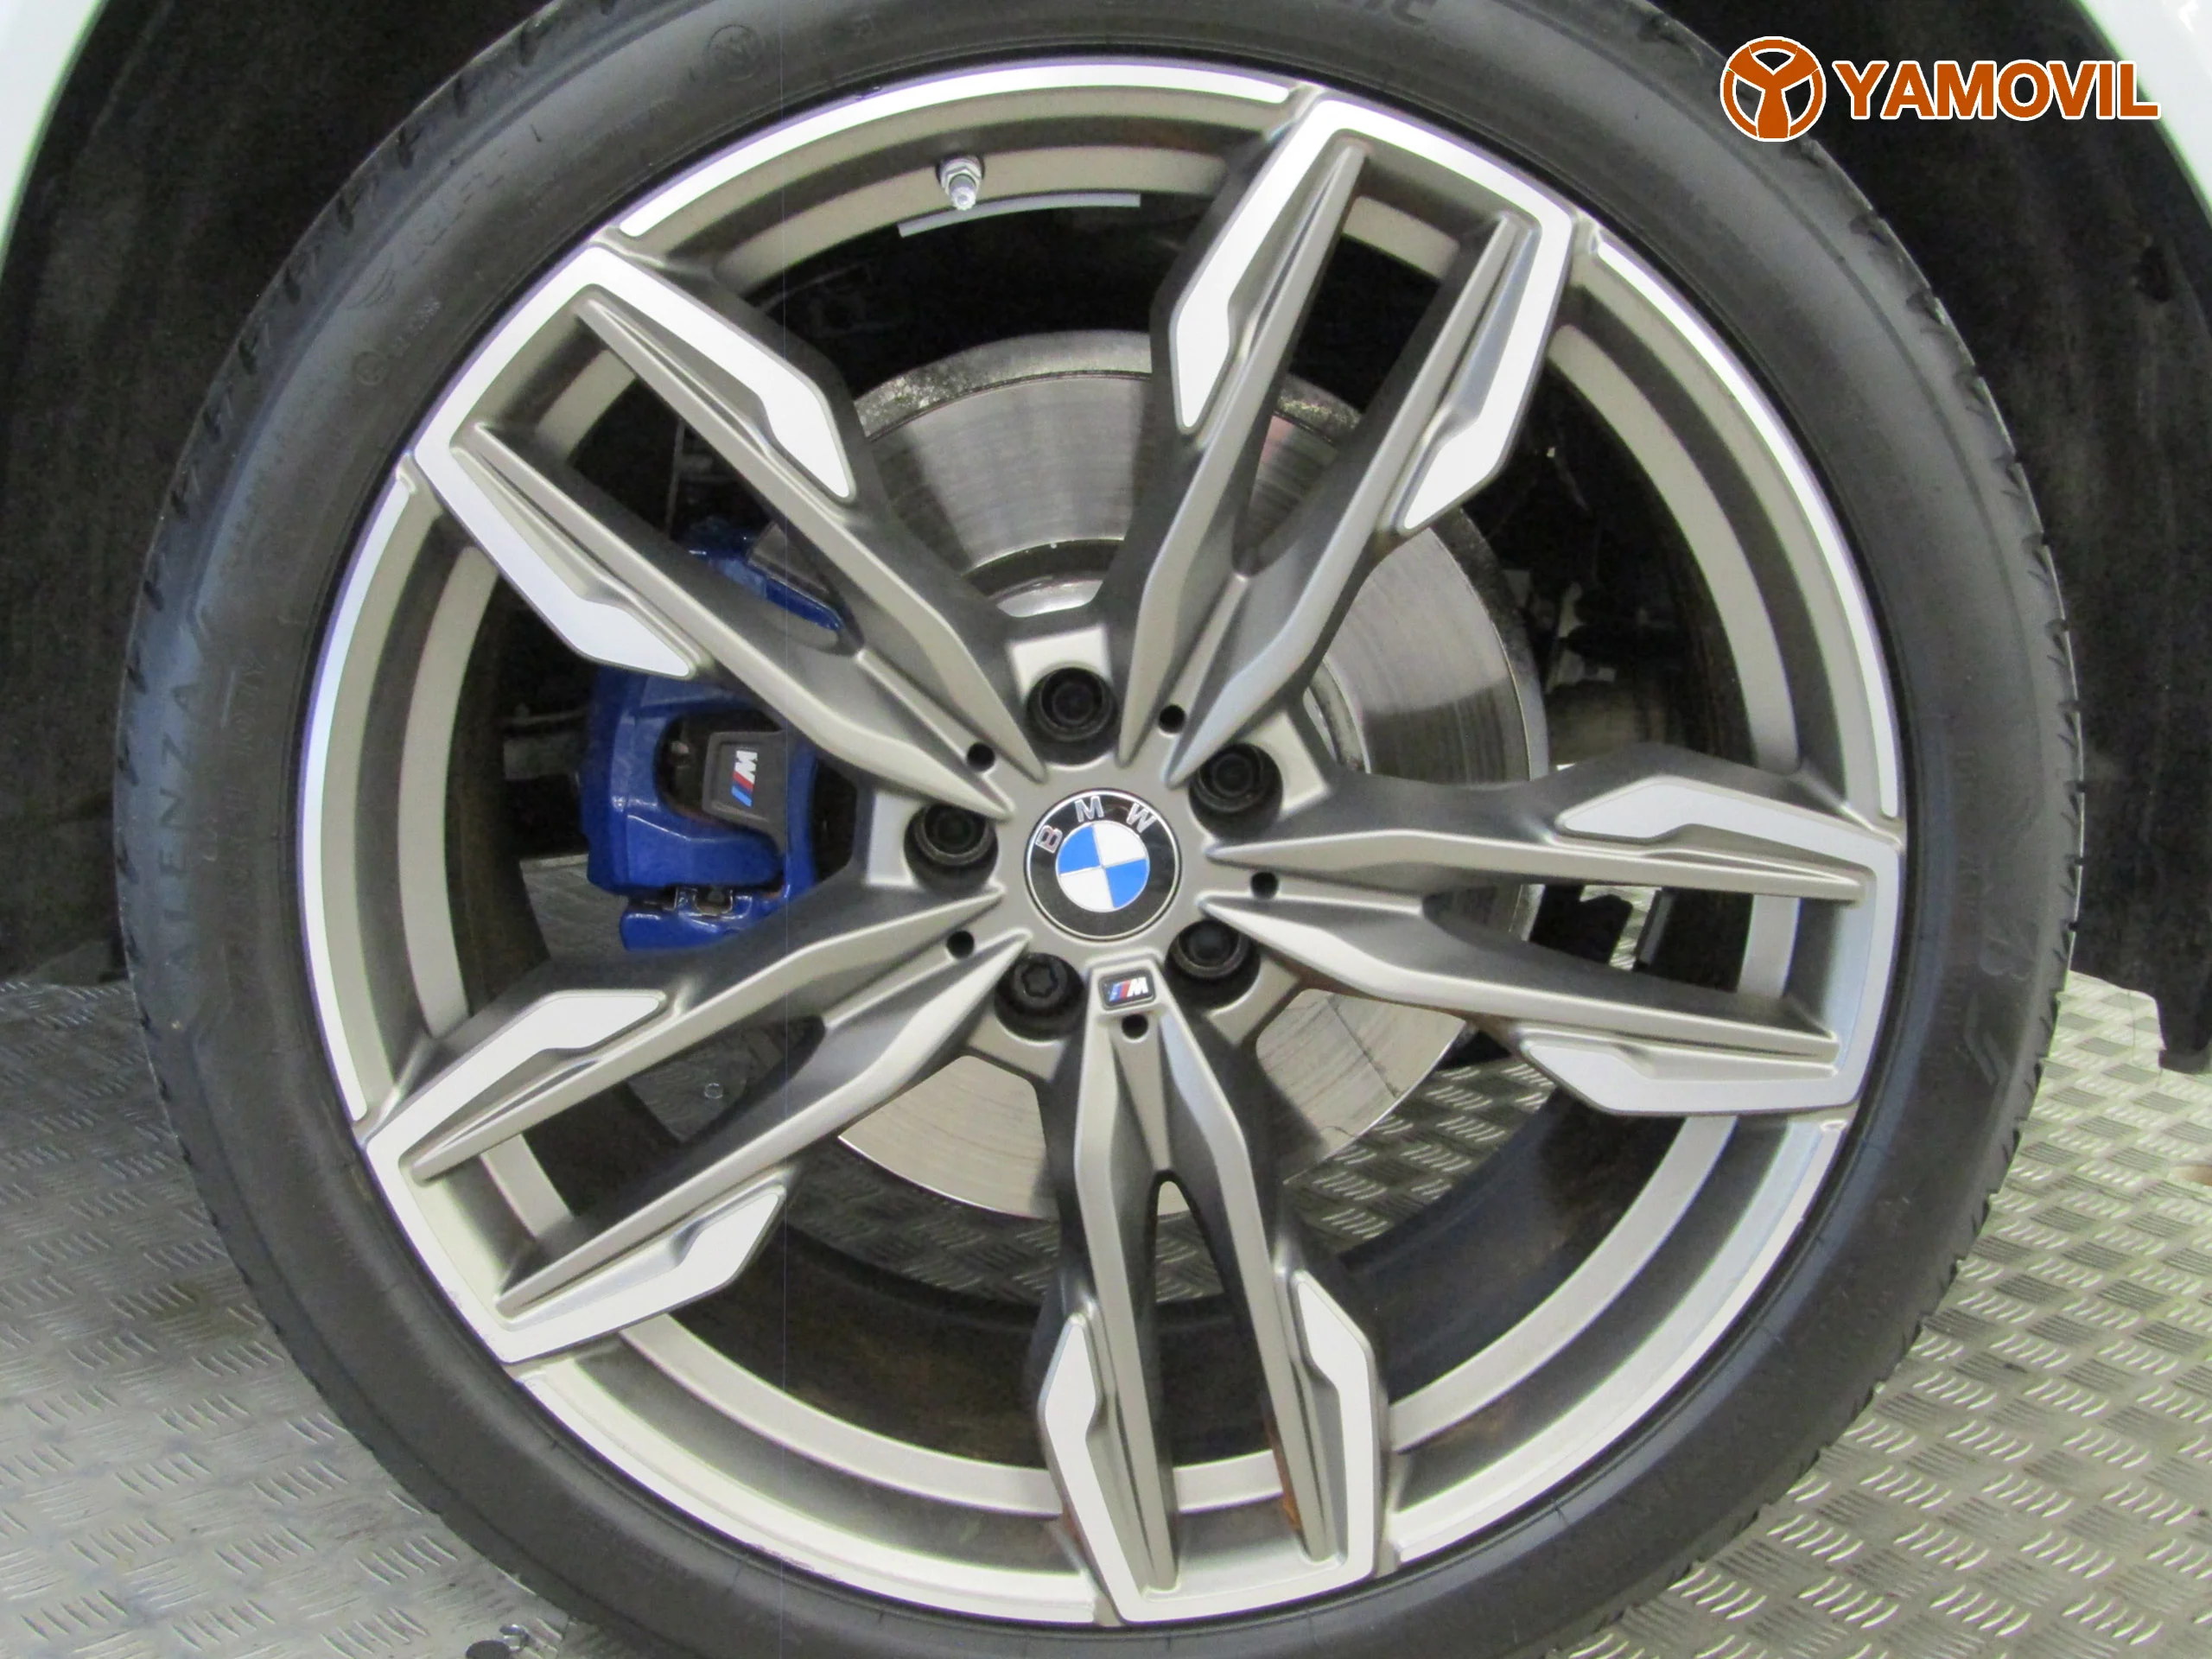 BMW X3 M4.0i 354CV 4X4 AUTO. 5P - Foto 10